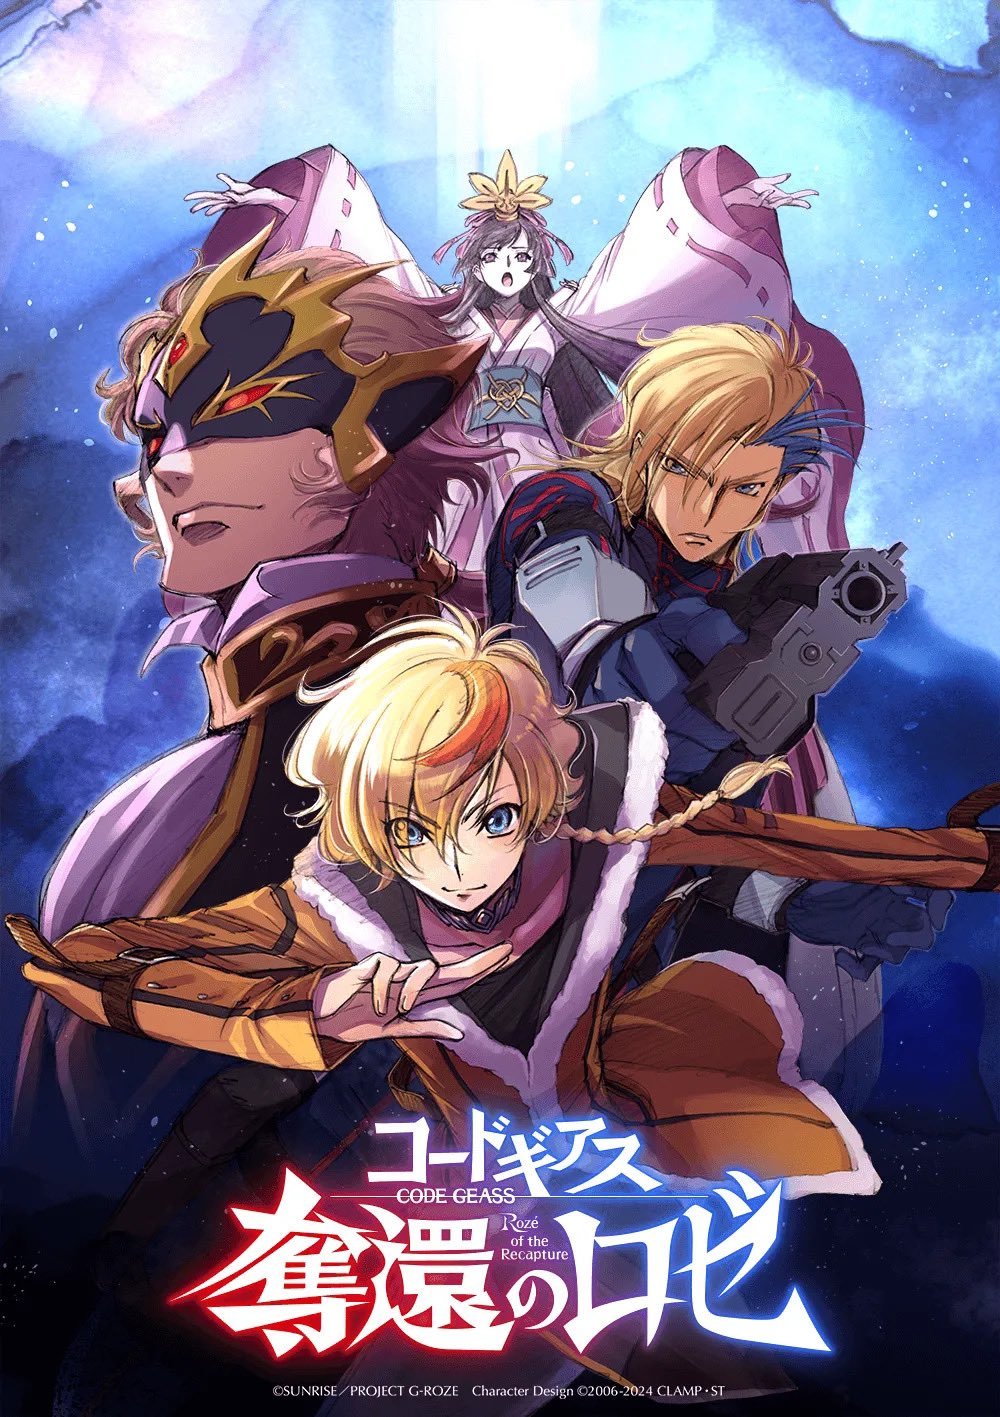 Animes In Japan 🎄 on X: INFO A Star+ já adicionou a dublagem